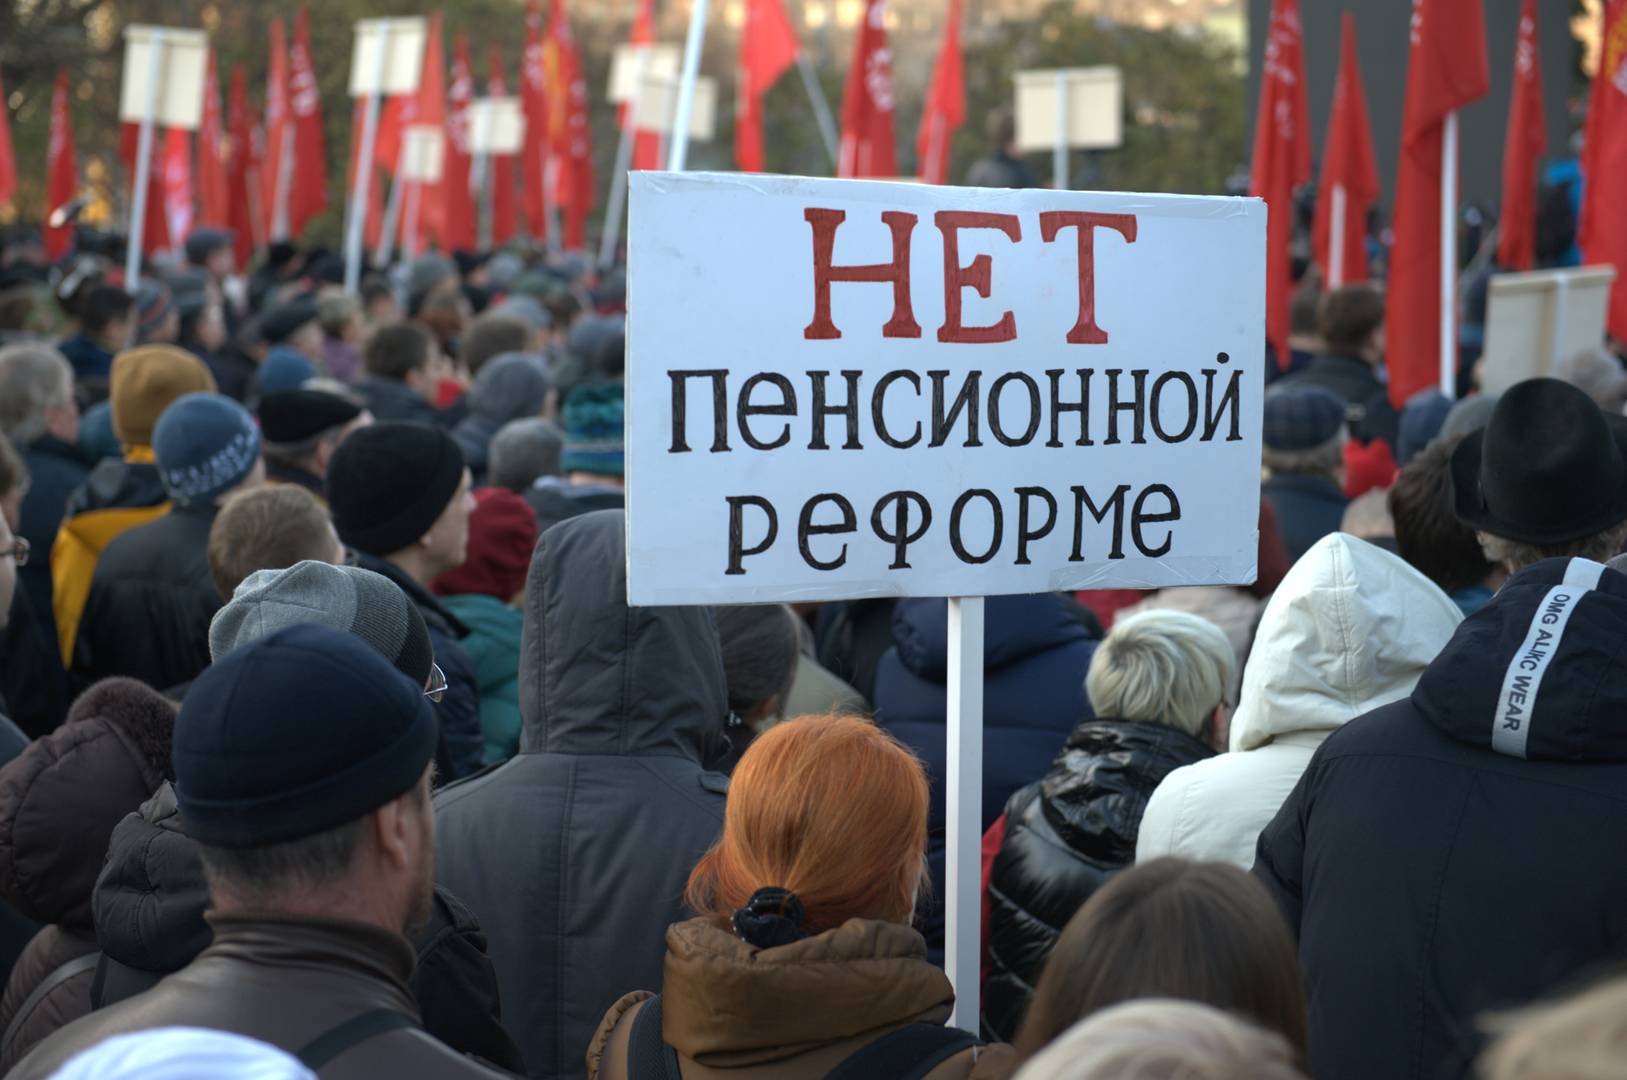 «НЕТ пенсионной реформе». Митинг «Сути времени» в Москве, 5 ноября 2018 г.